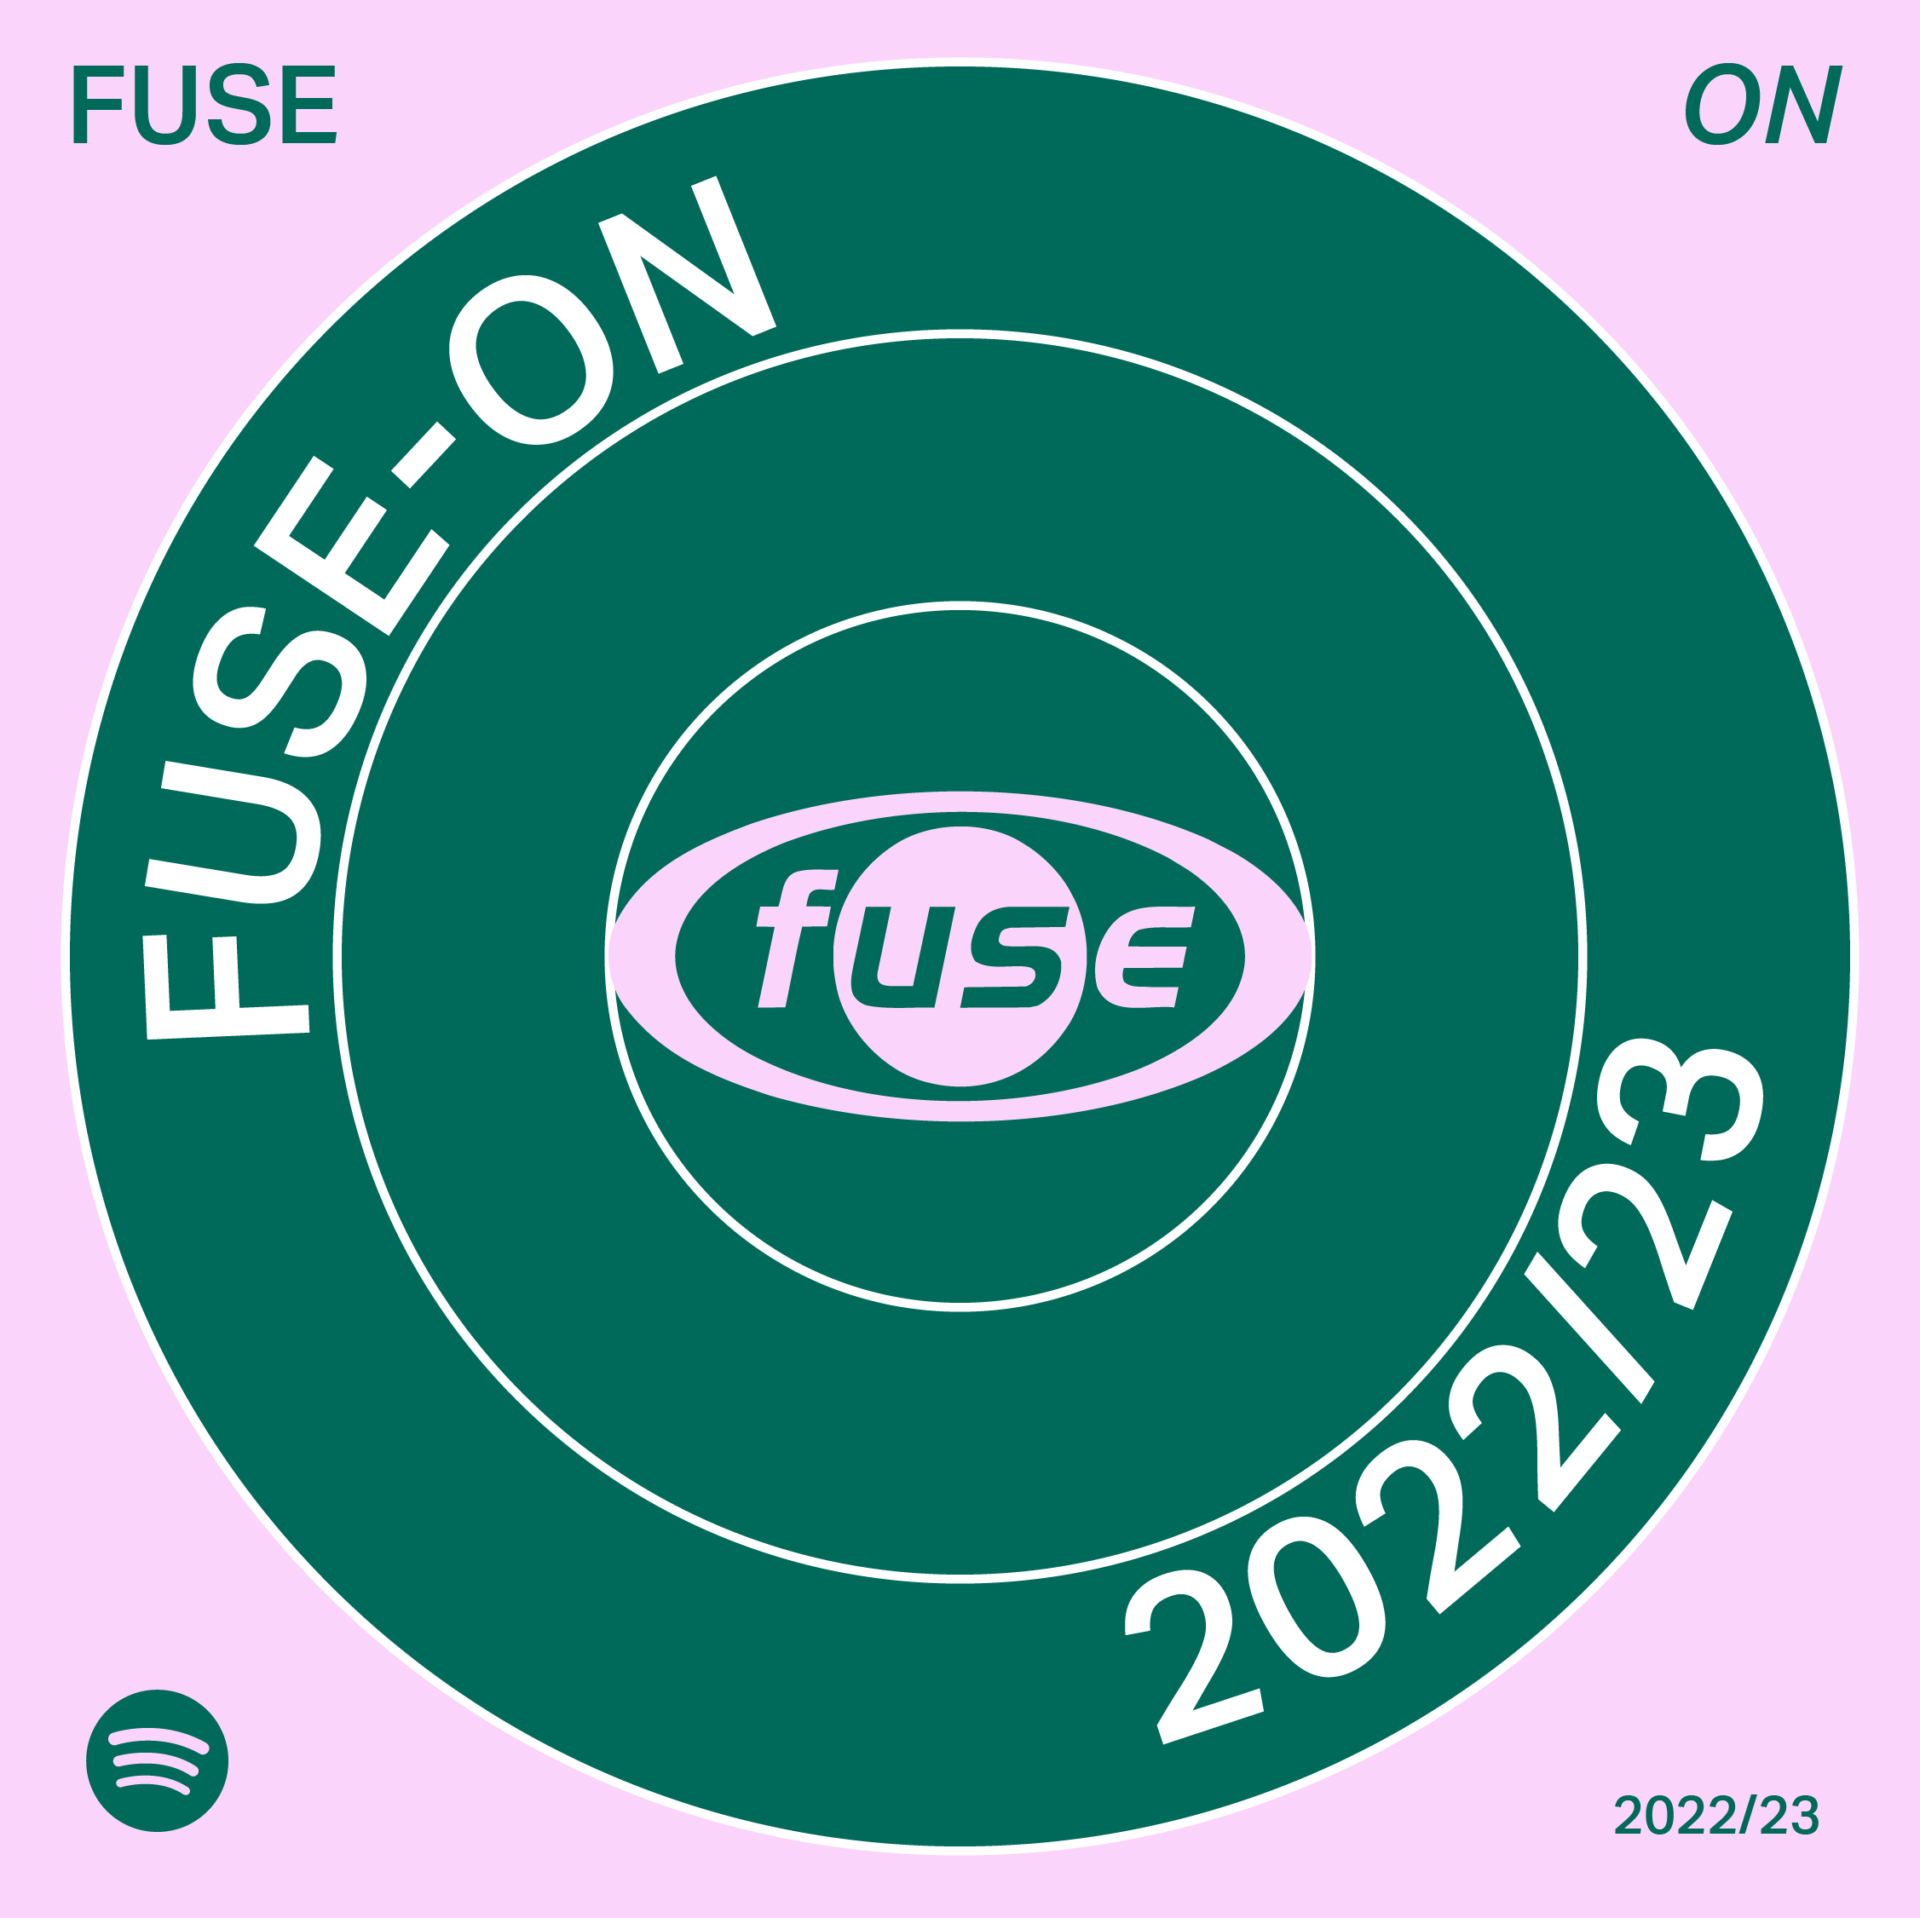 FUSE ON 2022 23